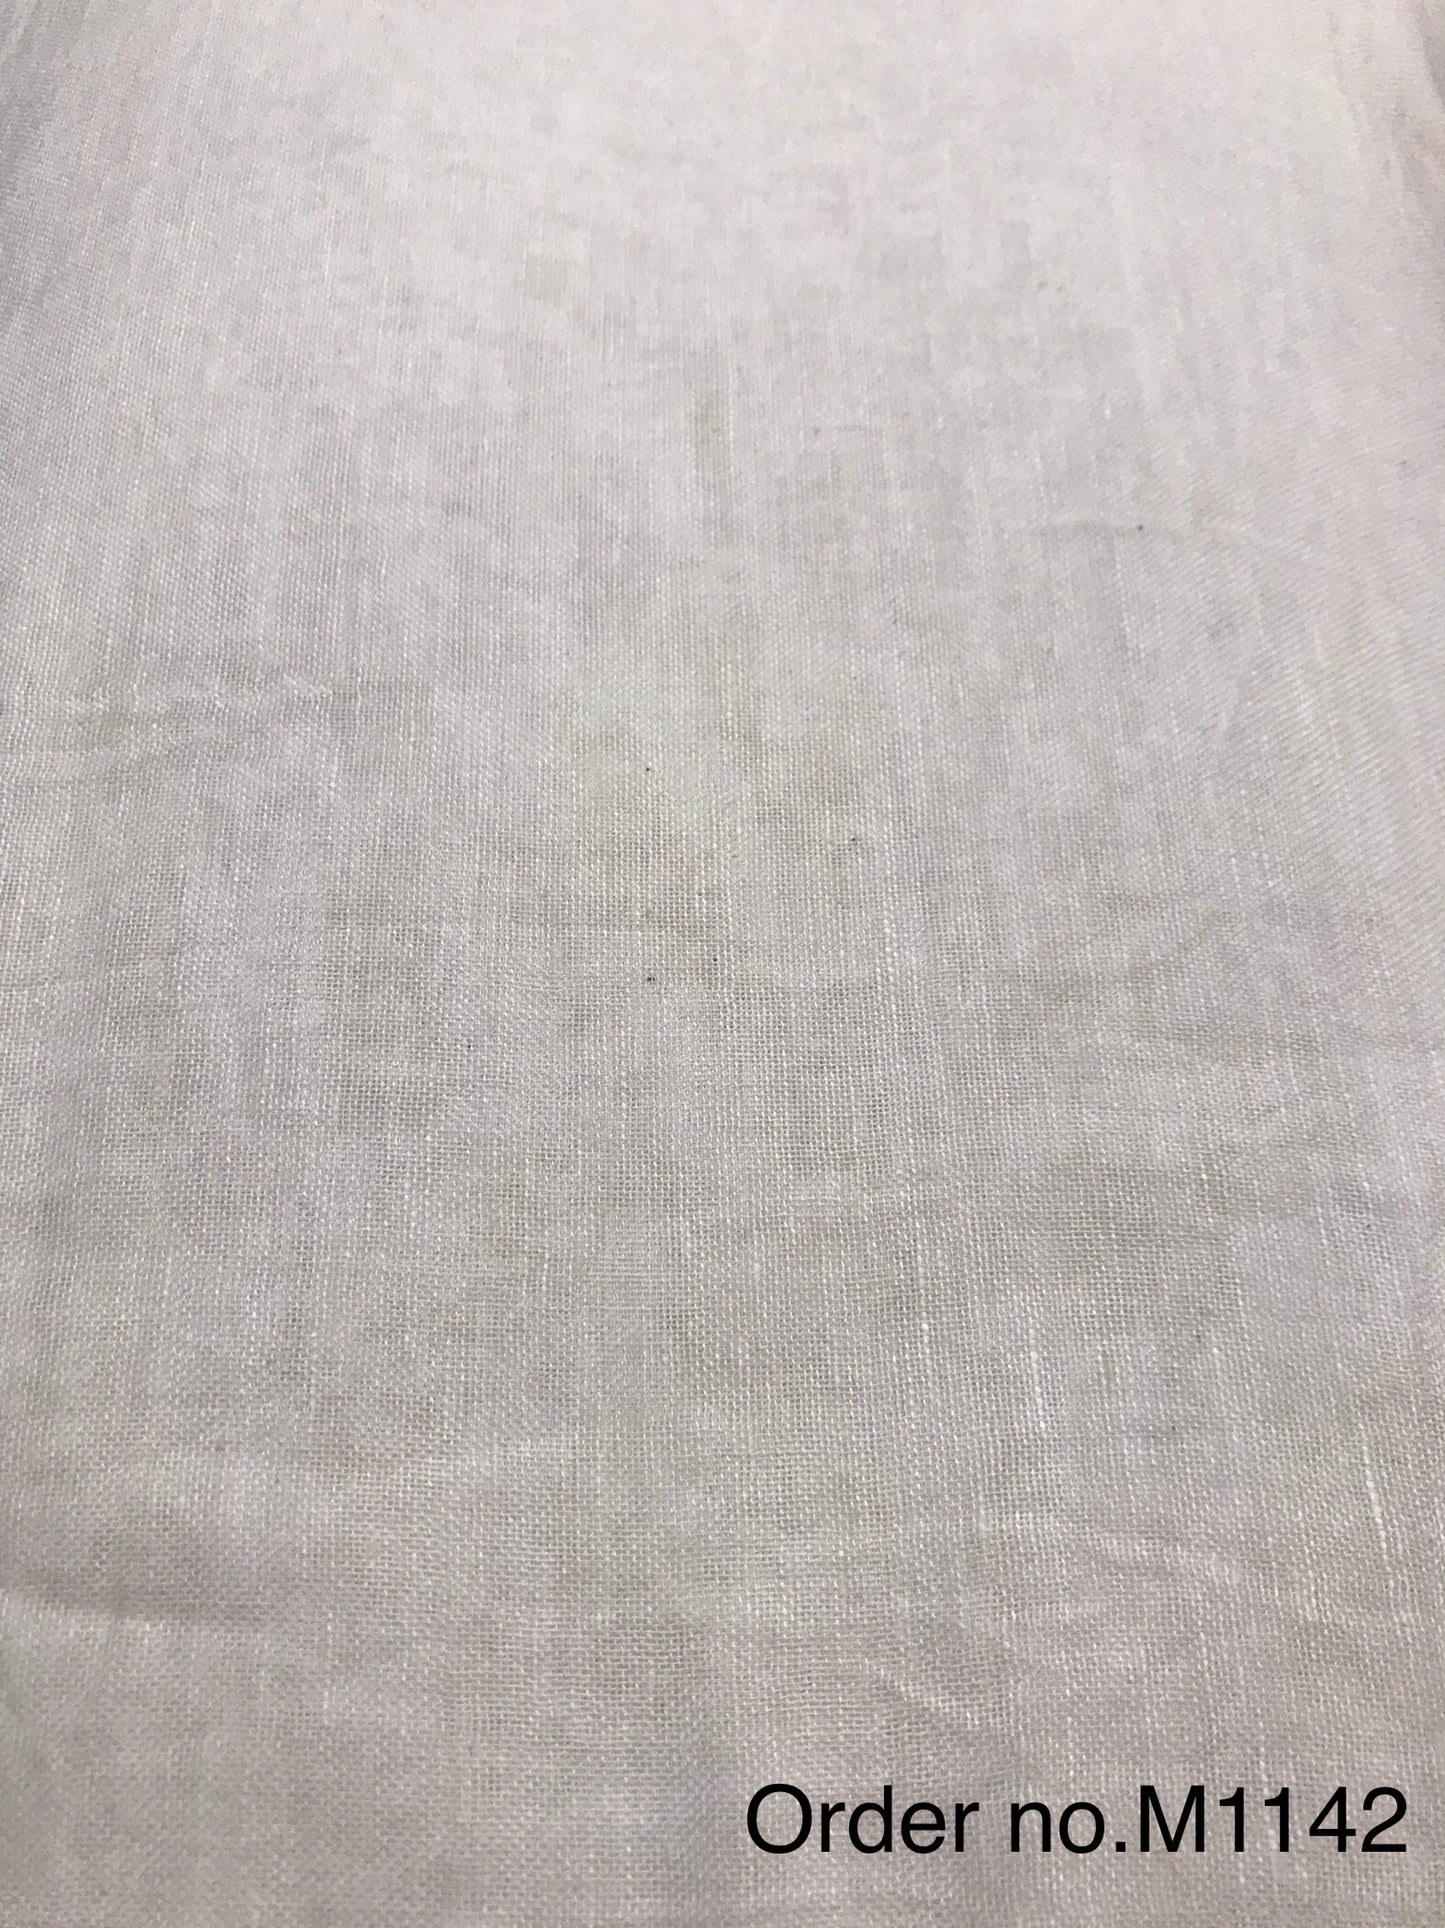 Linen gauz cotton 80gm width 60”